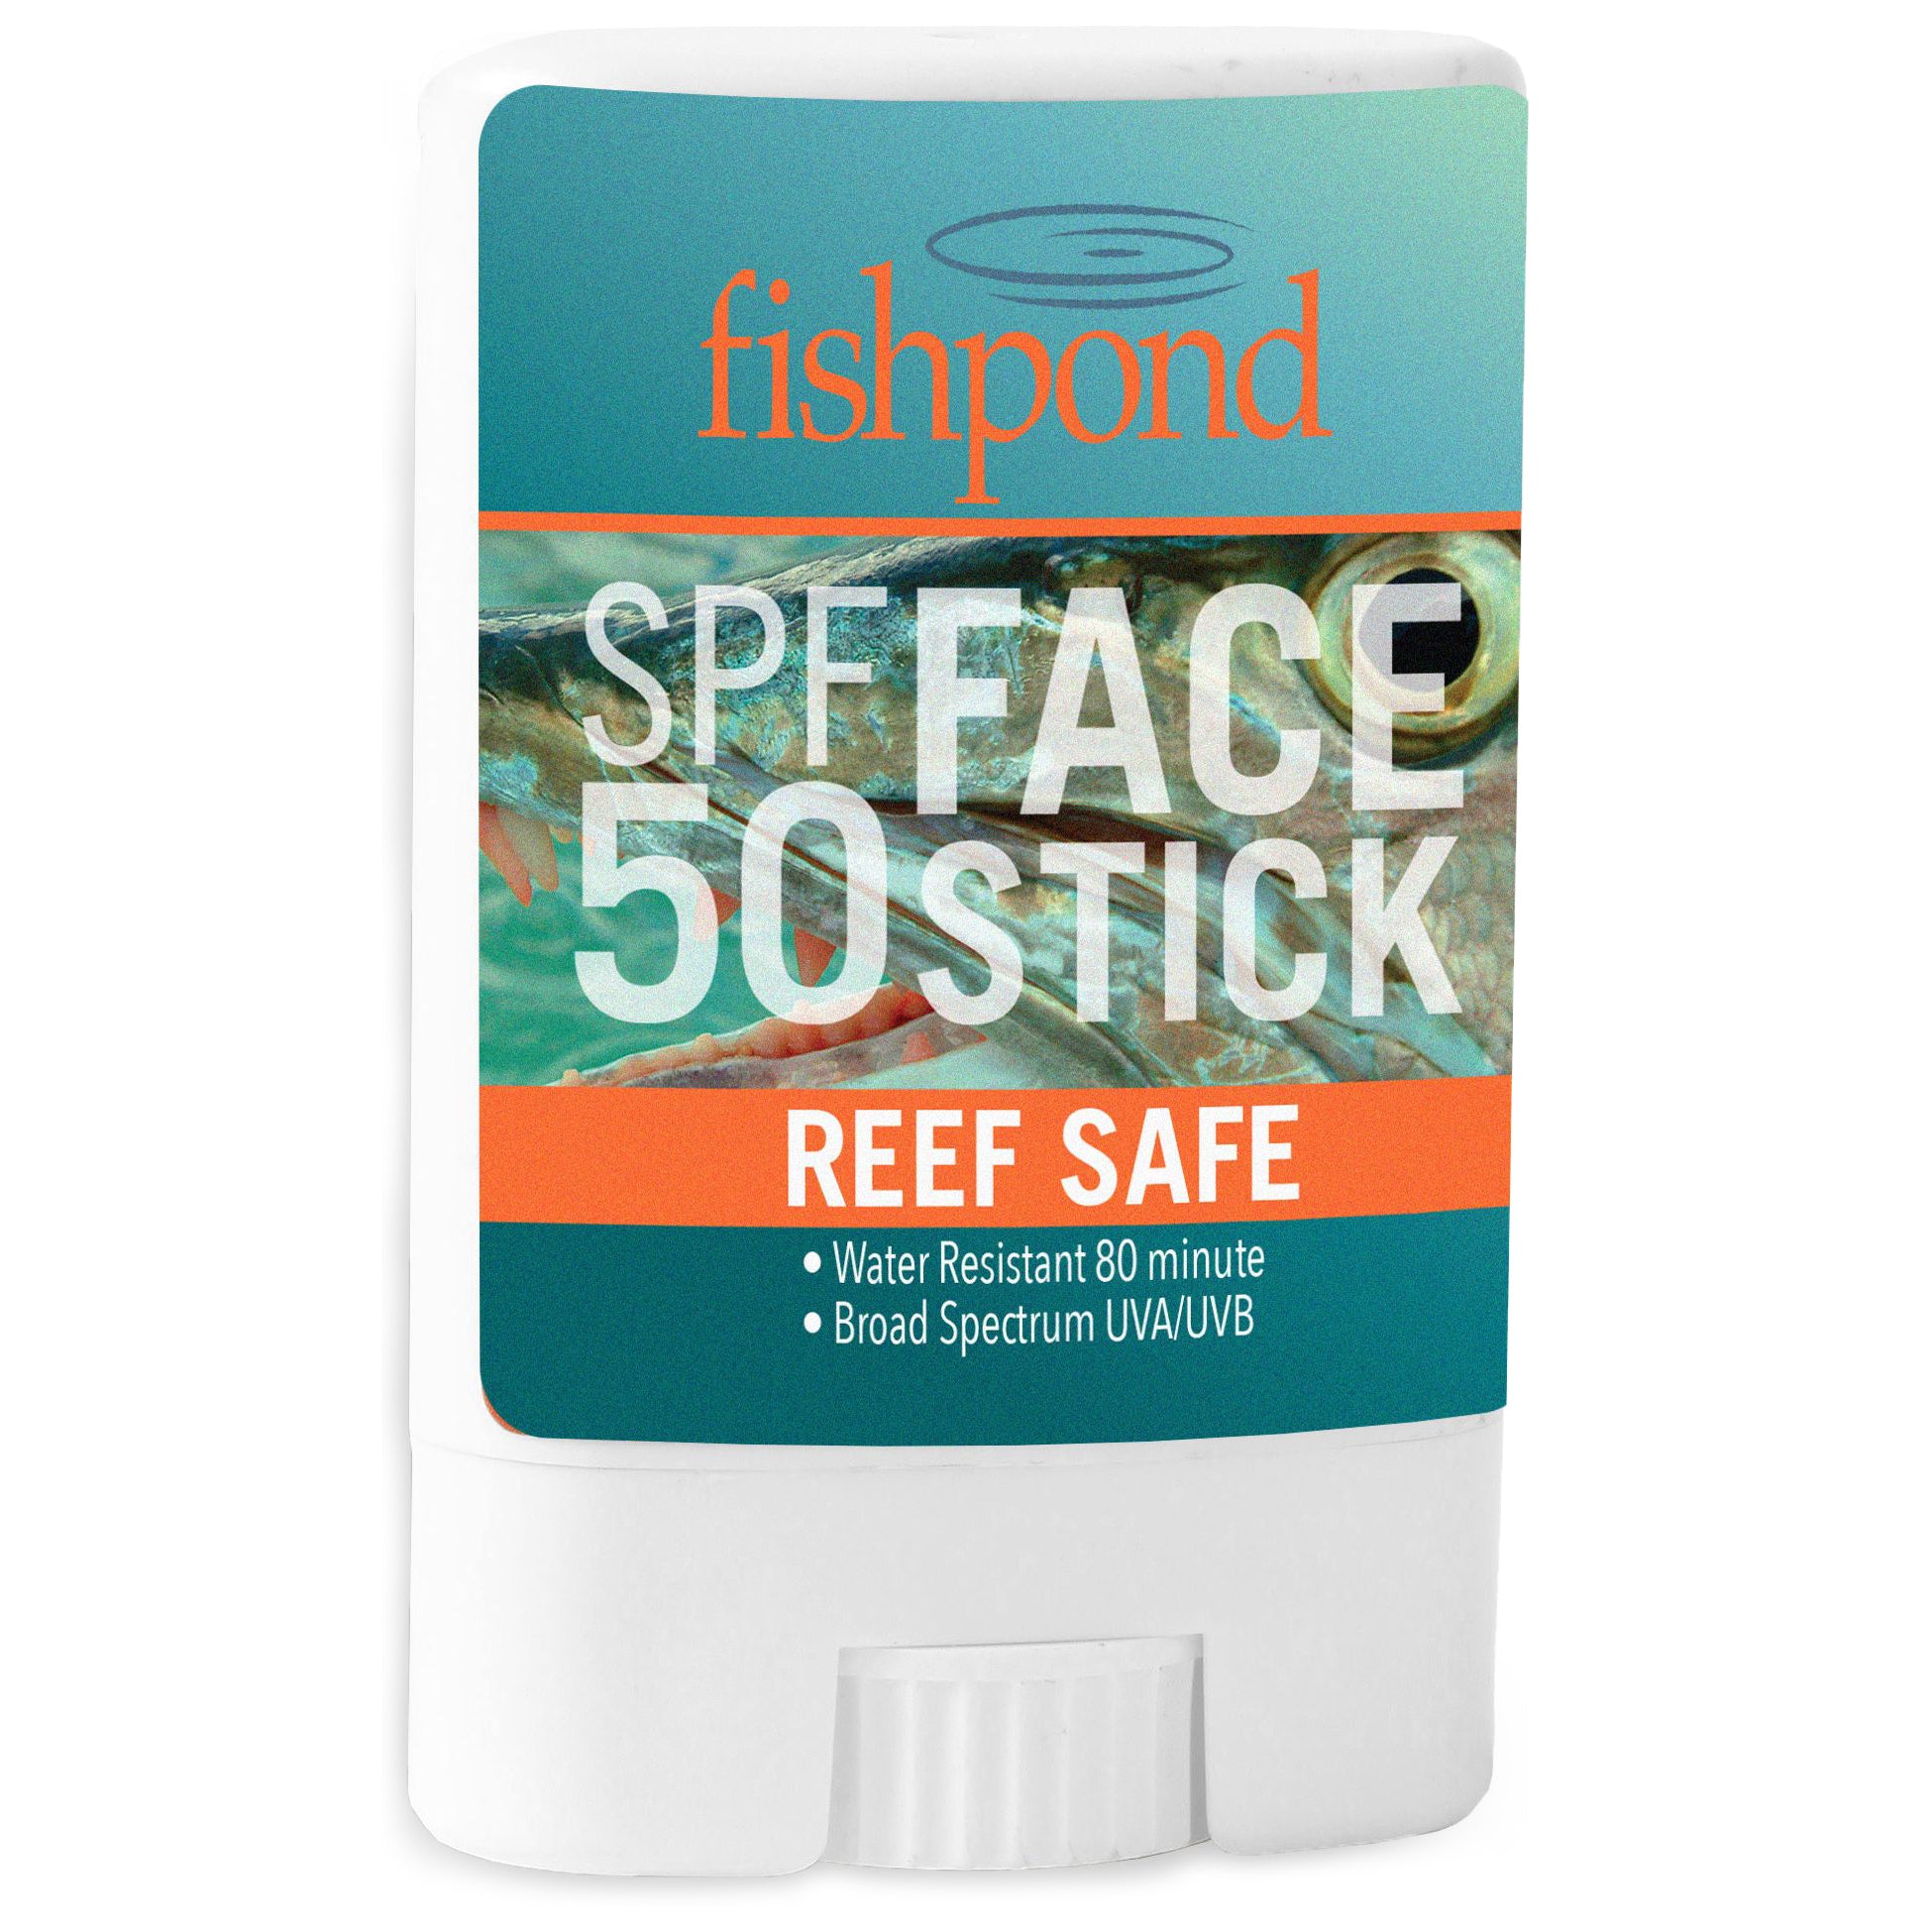 Fishpond Reef Safe Face Stick SPF 50 Image 01